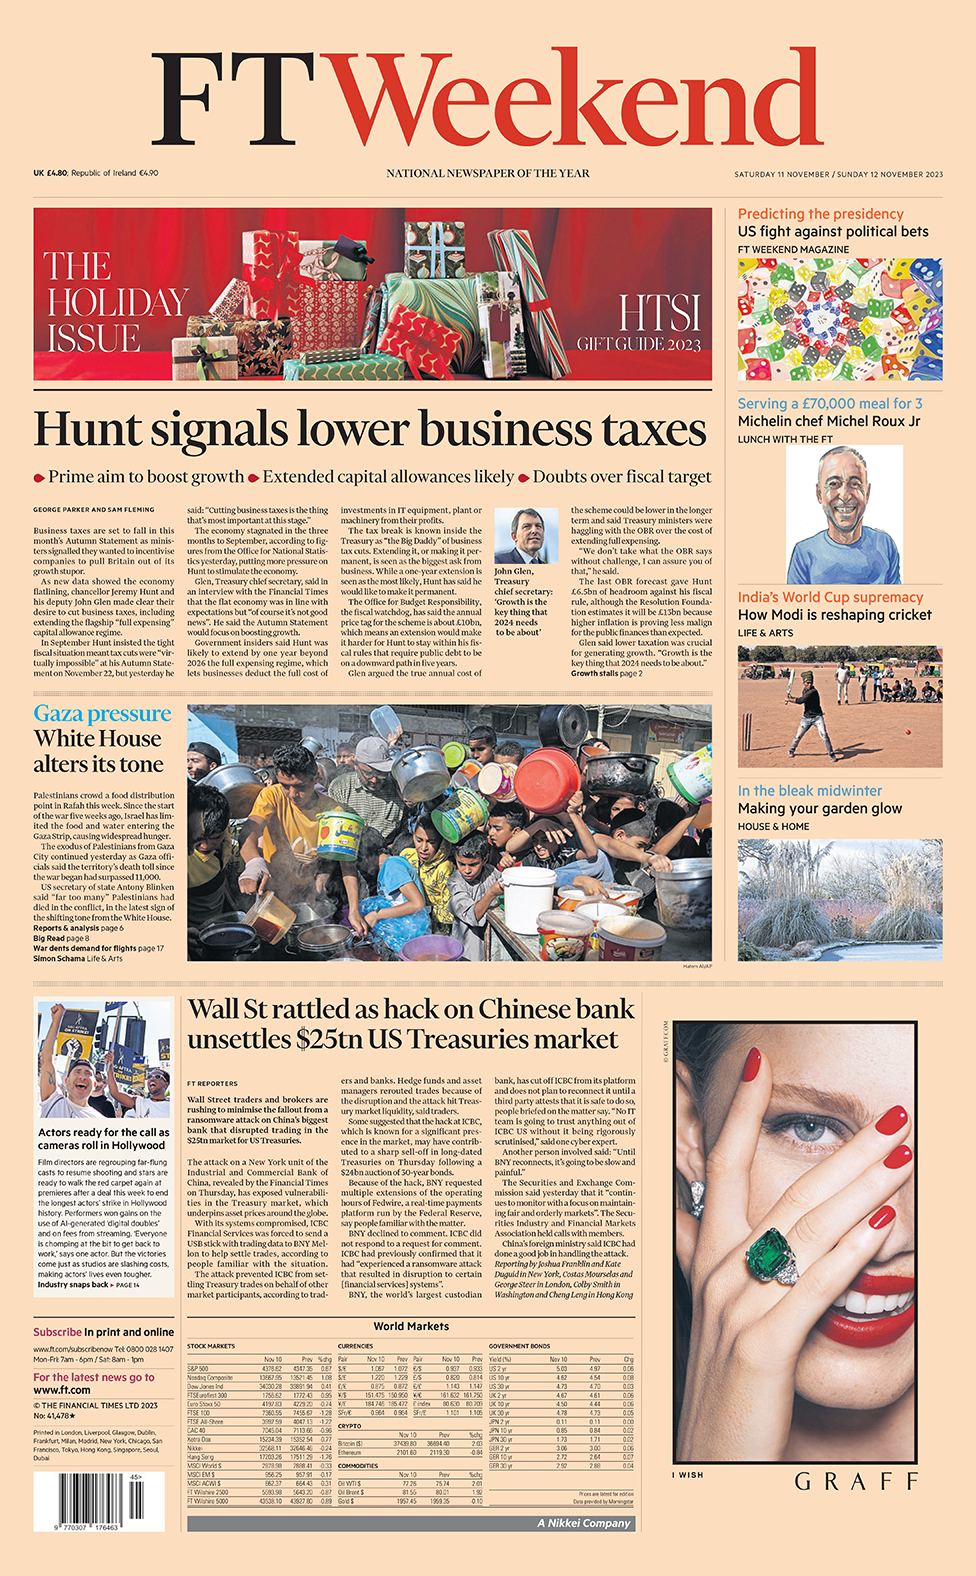 «Хант сигнализирует о снижении налогов на бизнес», - гласит заголовок Financial Times